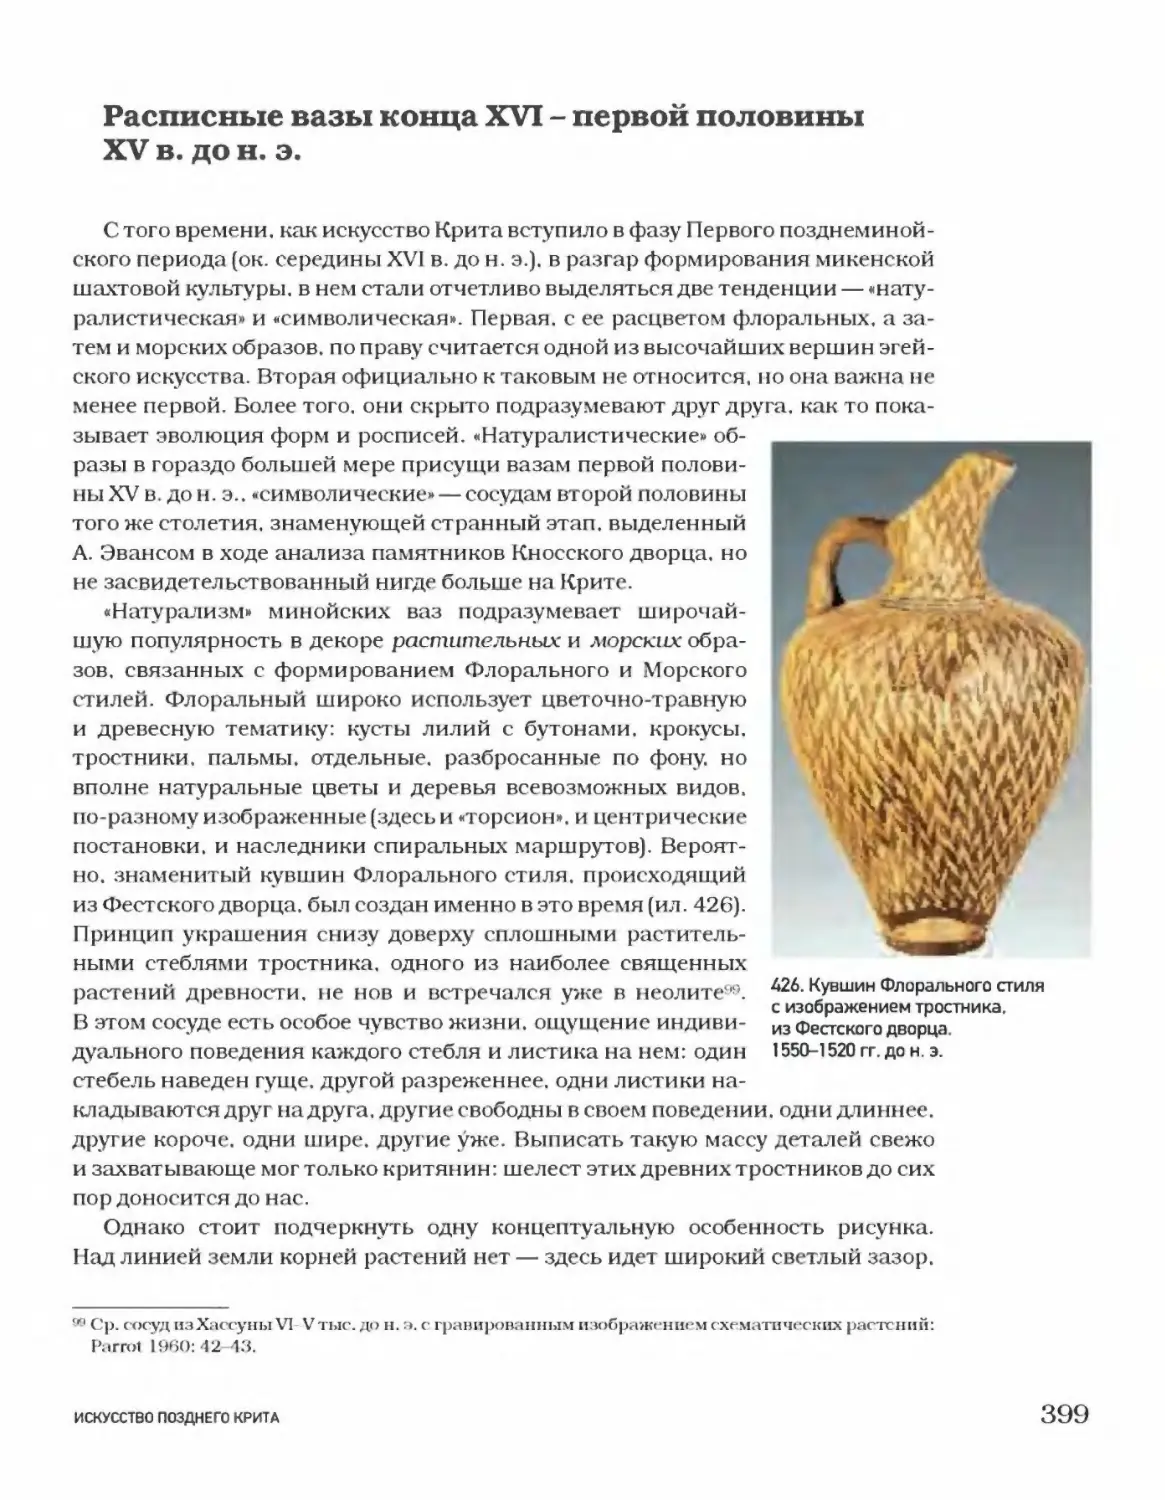 Расписные вазы конца XVI — первой половины XV в. до н. э.